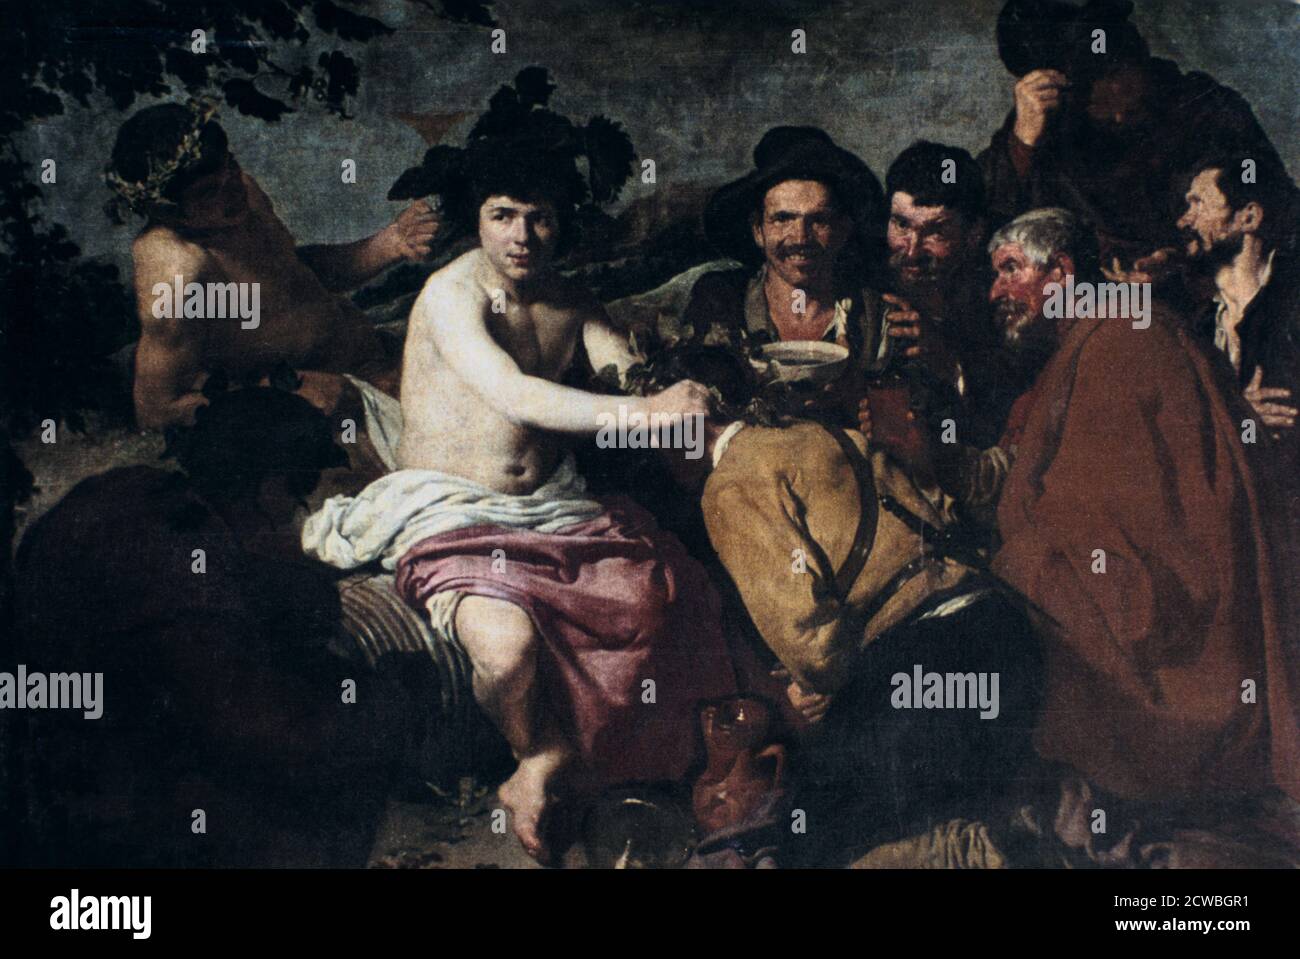 Le Triumph de Bacchus' ou "les drunkards", par Diego Velazquez, 17ème siècle. Velazquez, l'un des rares peintres espagnols à représenter des scènes mythologiques, a souvent été accusé de traiter les exploits et les contes des dieux classiques avec peu de respect, et même de moquerie. En fait, cependant, guidé par son réalisme magnifique, il a simplement ramené les dieux au monde mortel. La meilleure façon et la plus réaliste de présenter le triomphe du dieu du vin - Bacchus pour les Romains et Dionysius pour les Grecs - était de le montrer parmi un groupe de drunkards quotidiens. De la collection du Musée du Prado, Madrid, S. Banque D'Images